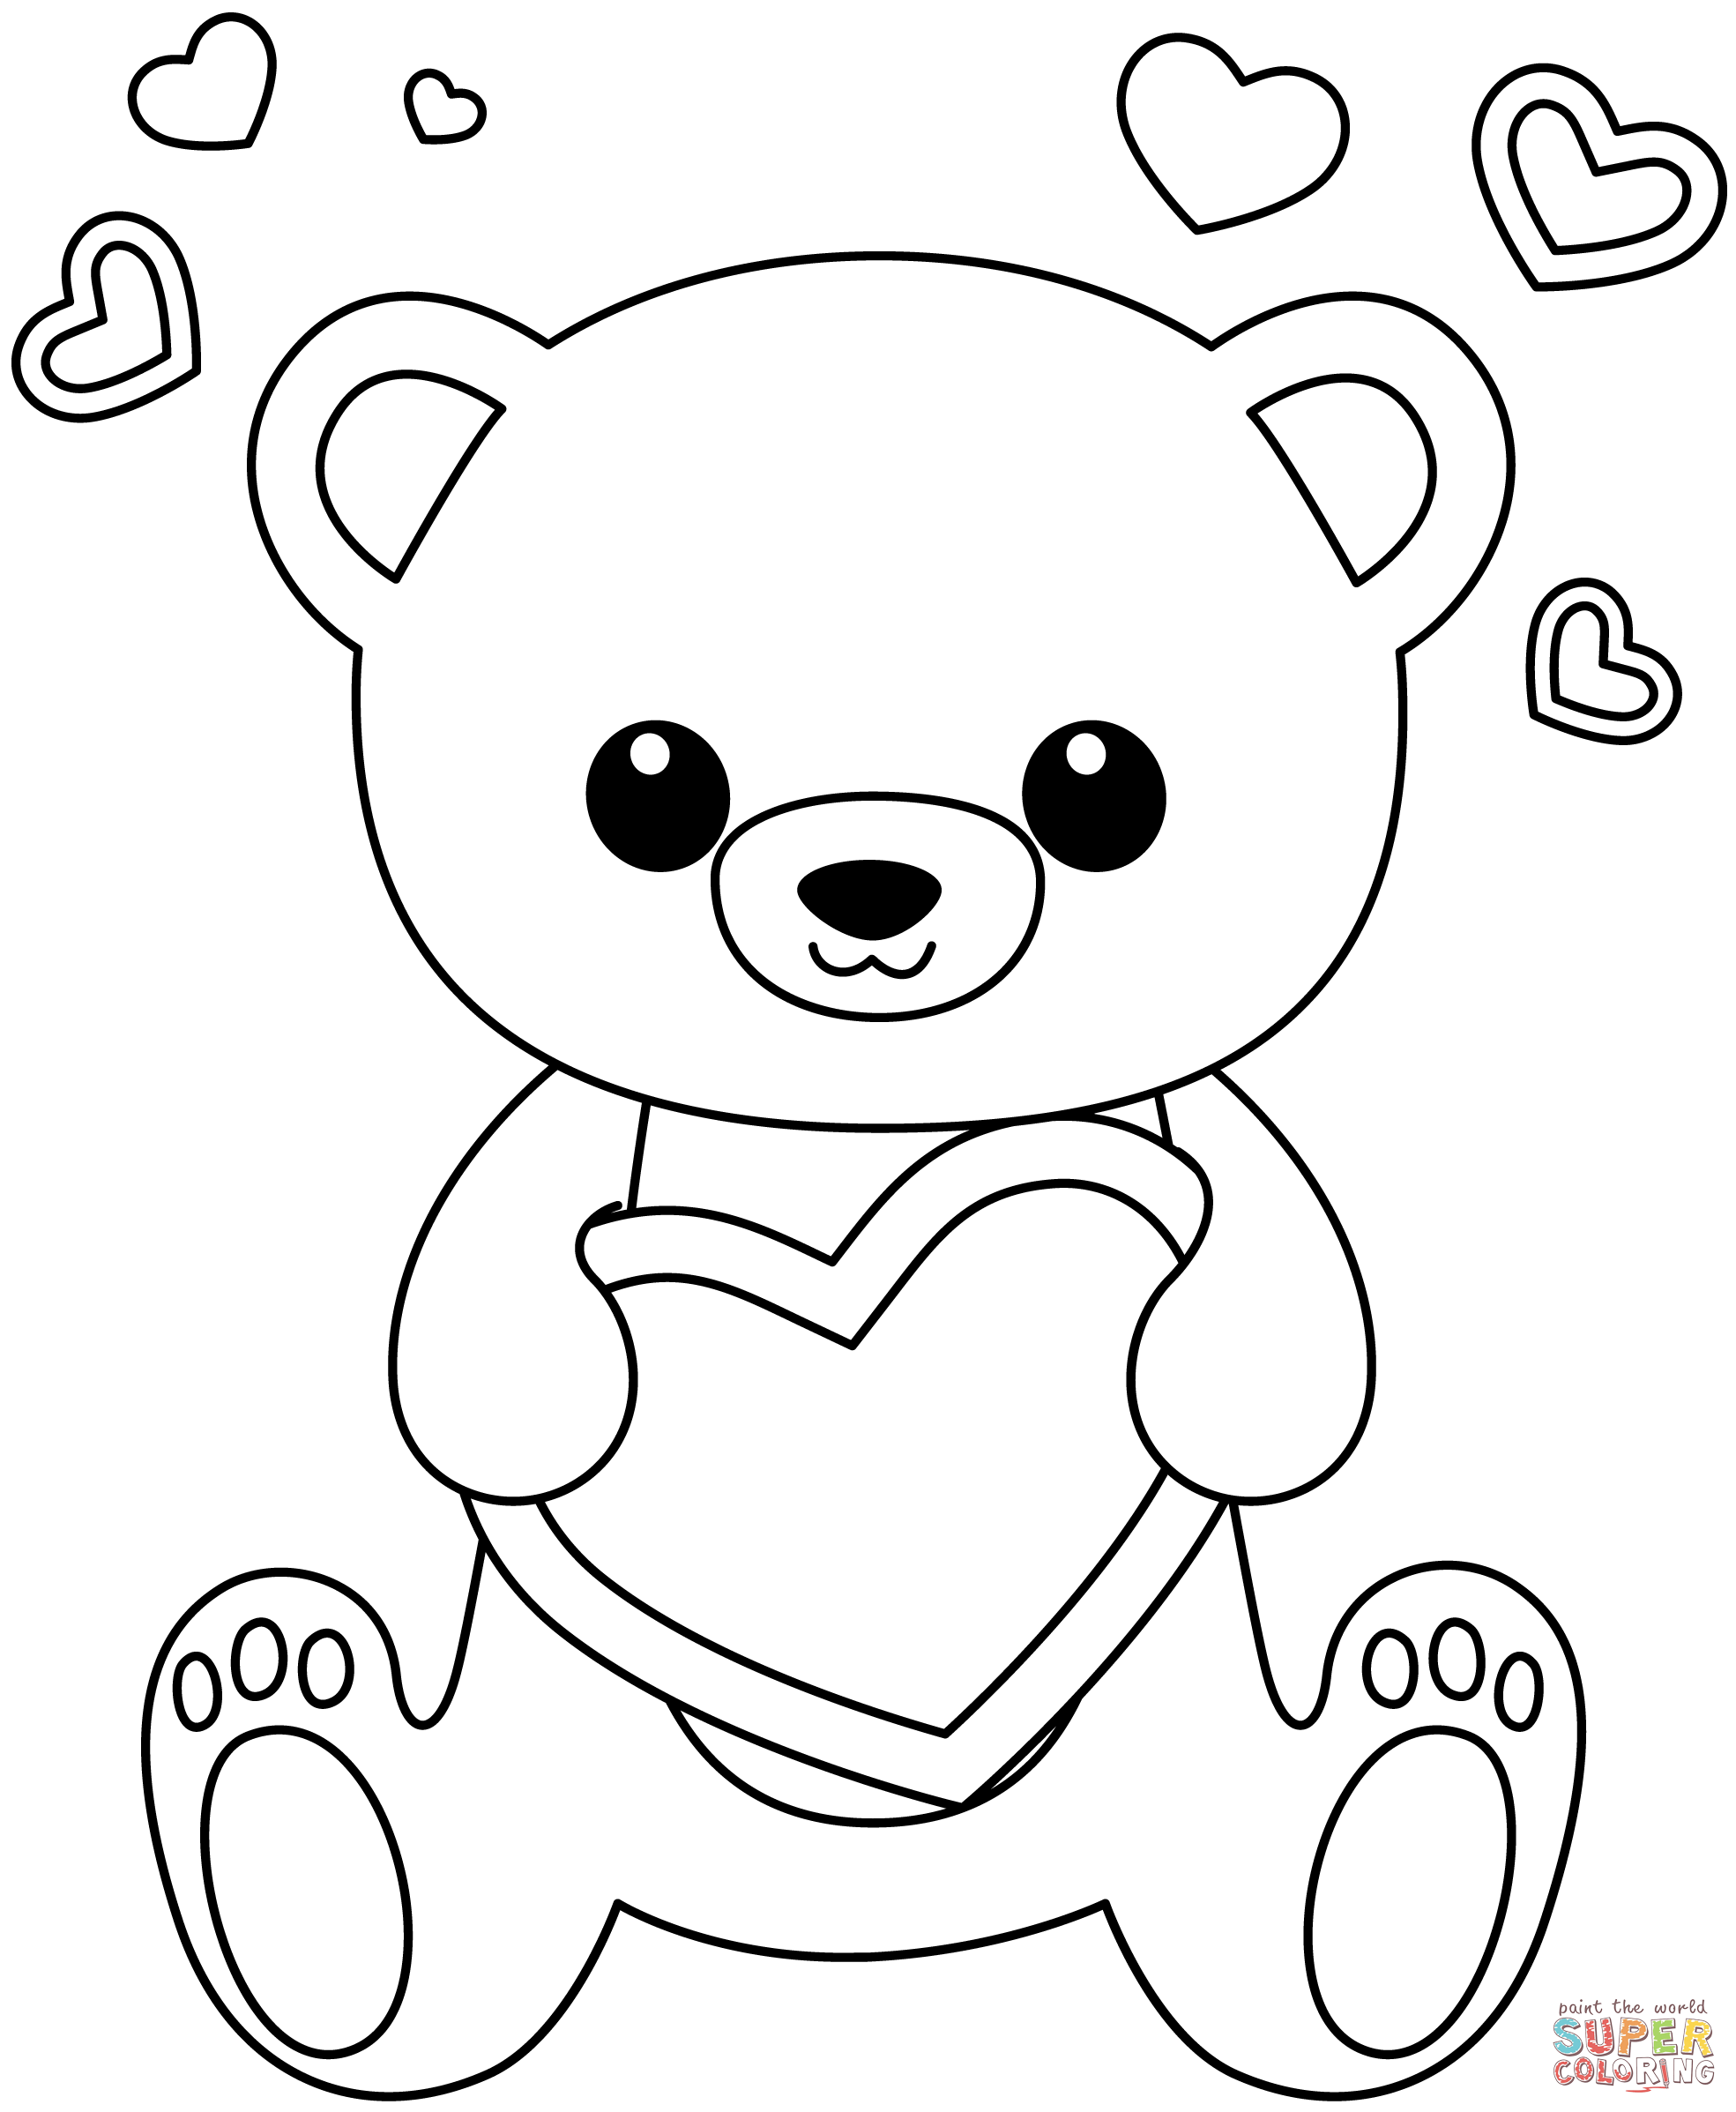 Dibujo de oso kawaii con corazãn para colorear dibujos para colorear imprimir gratis